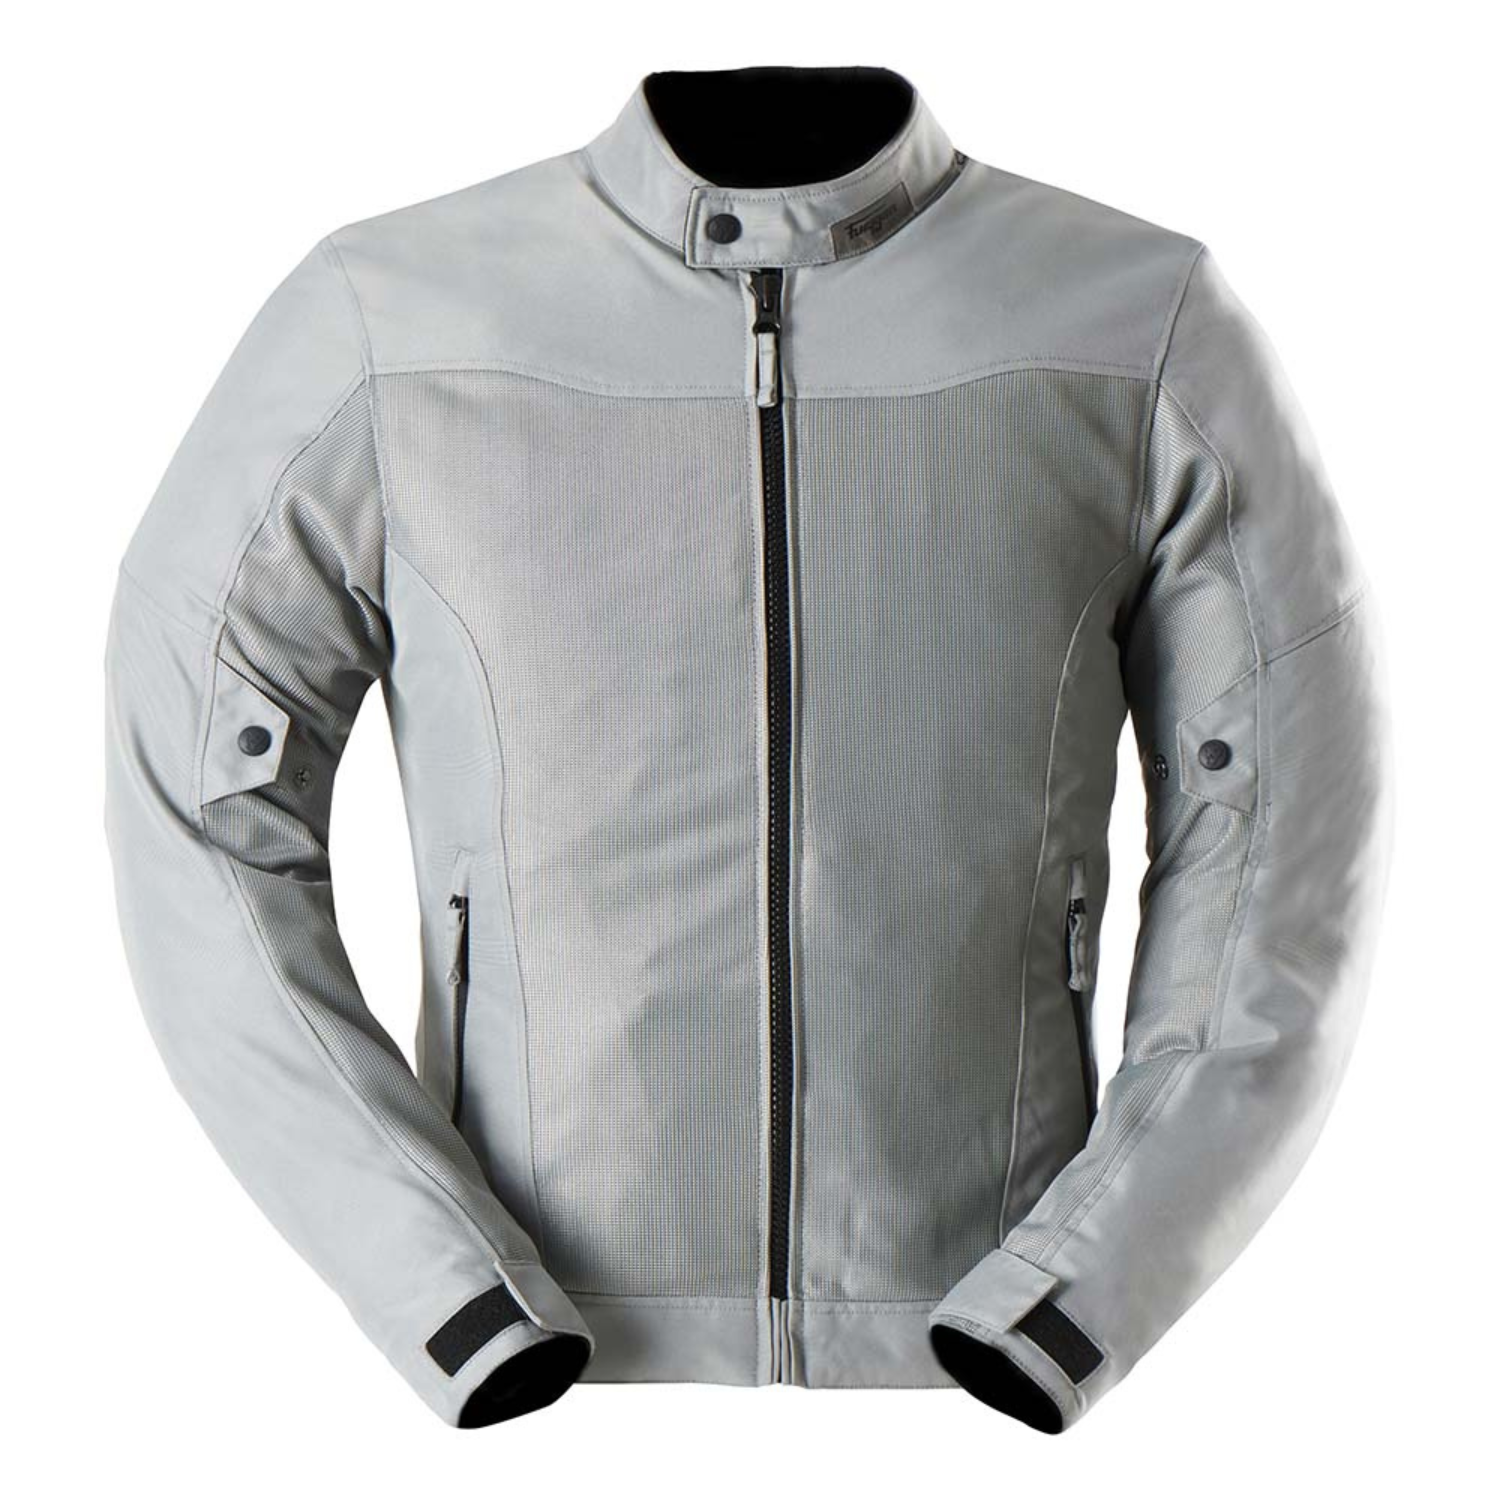 Furygan Mistral Evo 3 Jacket Grey Size 4XL